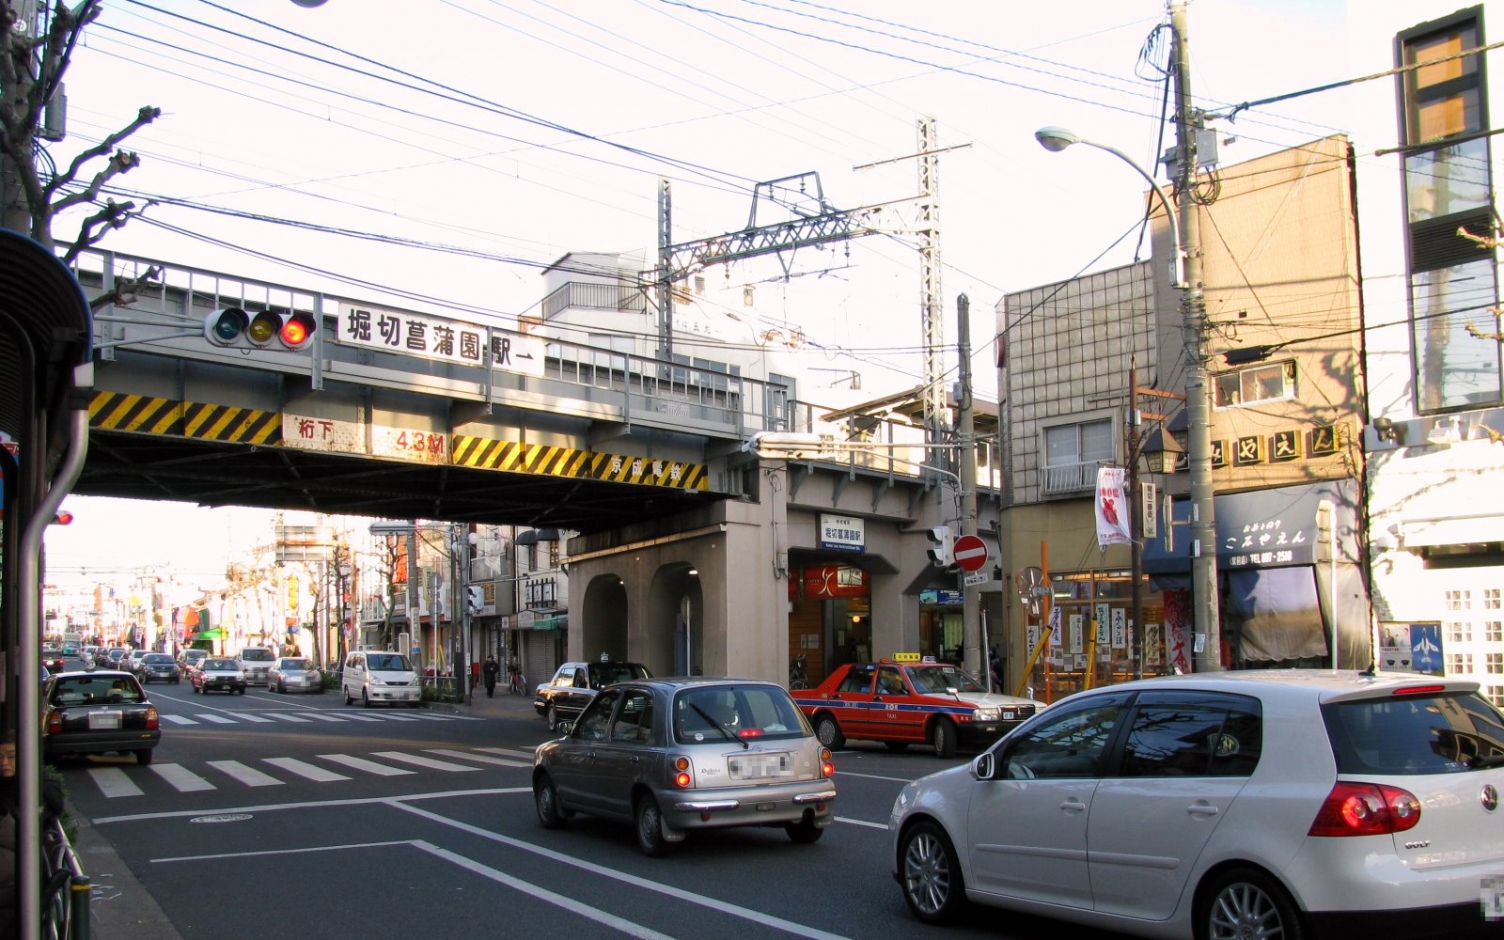 堀切菖蒲園駅（京成本線）近くのそろばん・珠算教室